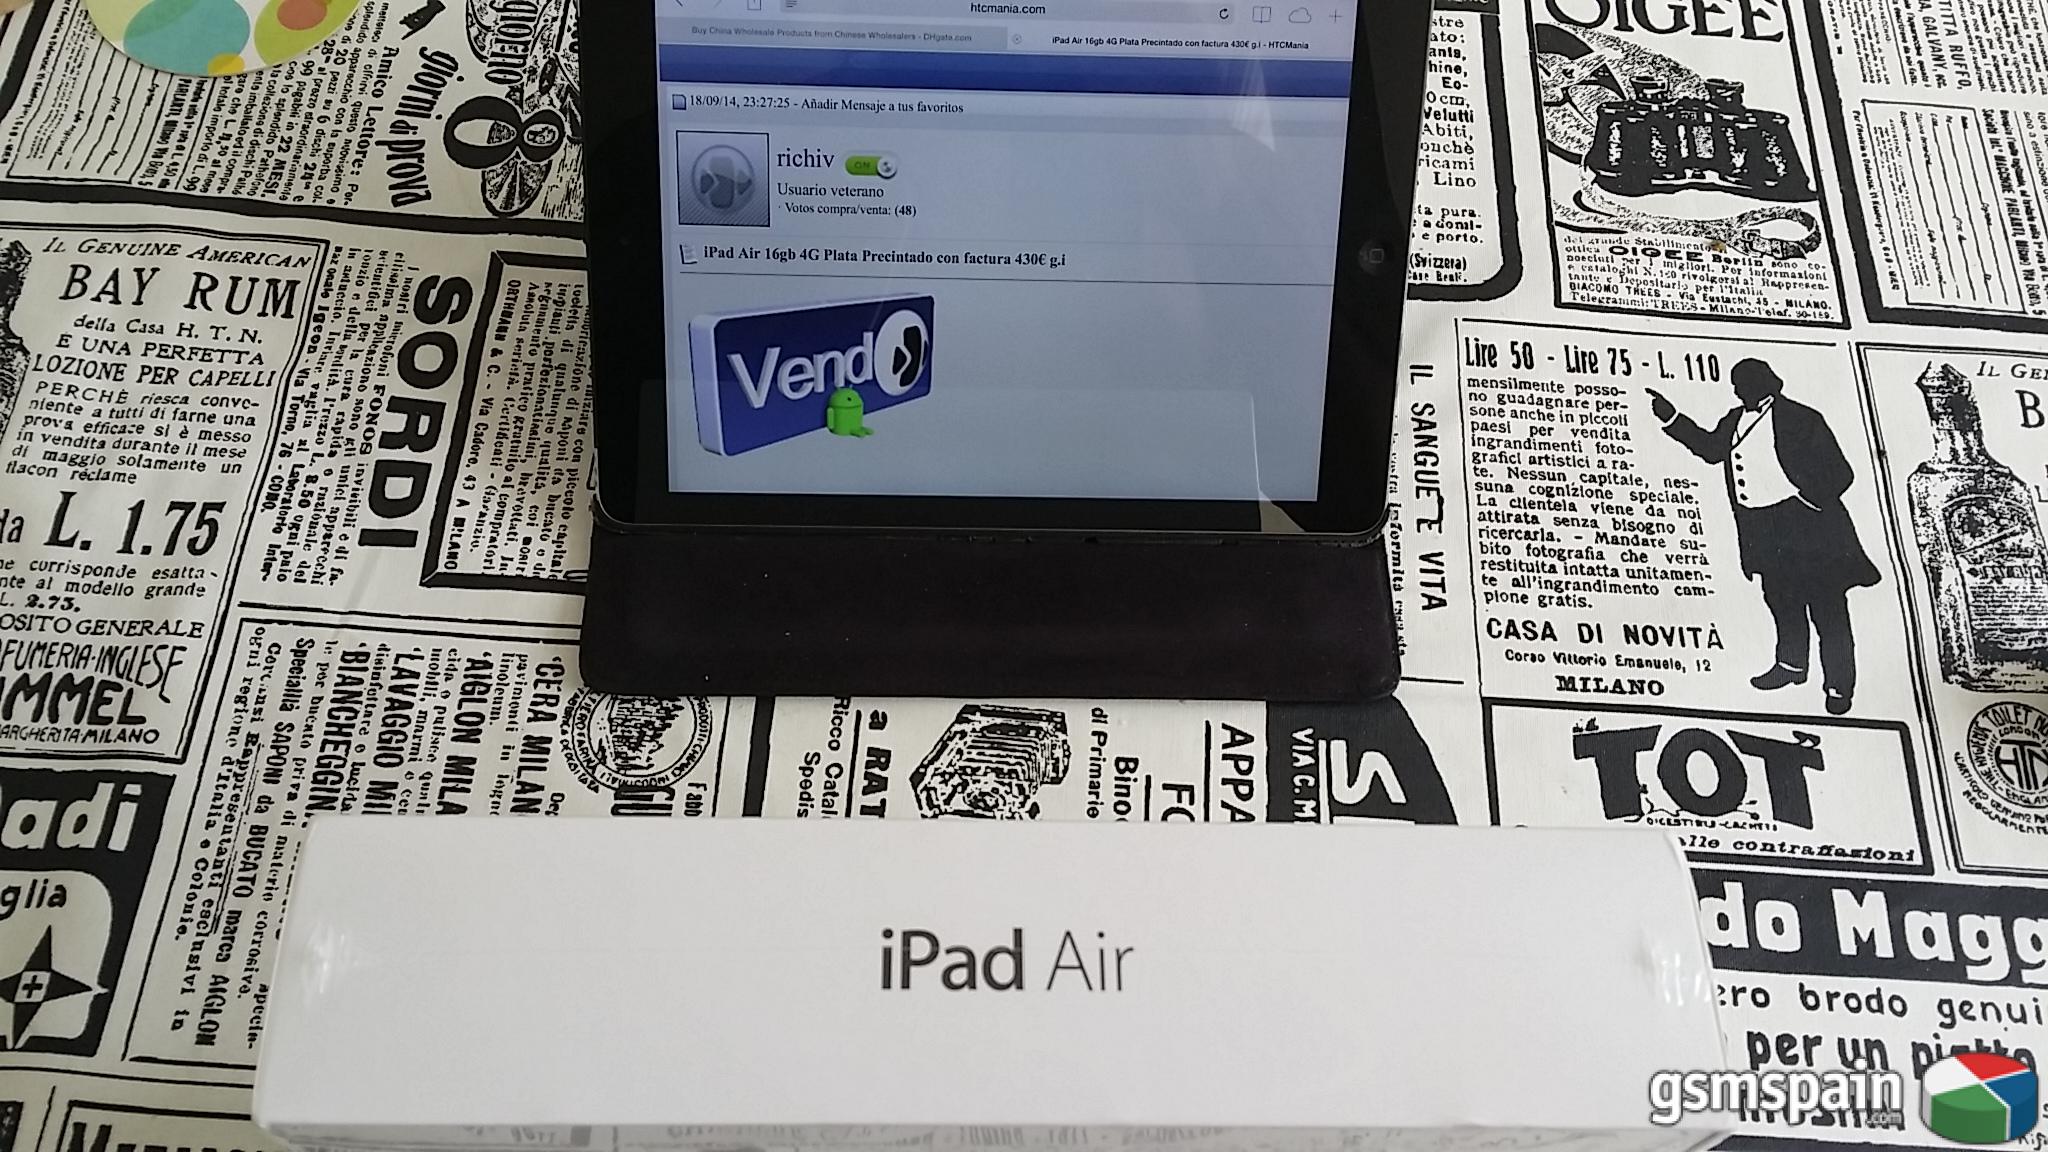 [VENDO] iPad Air 16gb 4G Plata Precintado con factura 430 g.i